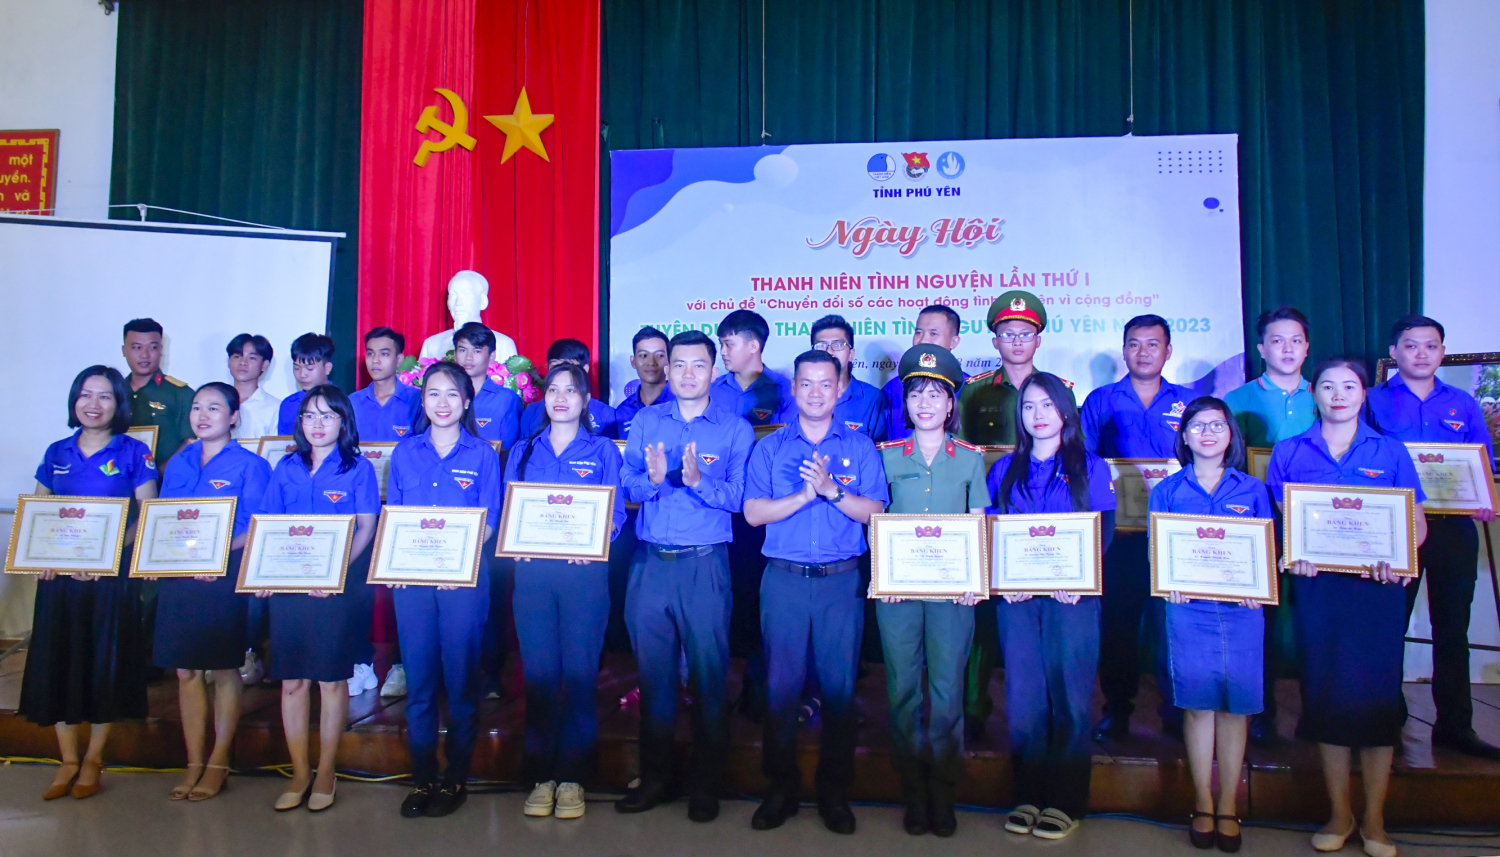 Đồng chí Võ Duy Kha, Phó Bí thư Tỉnh Đoàn, Chủ tịch Hội Sinh viên Việt Nam tỉnh trao bằng khen cho các cá nhân có thành tích xuất sắc trong các hoạt động tình nguyện.